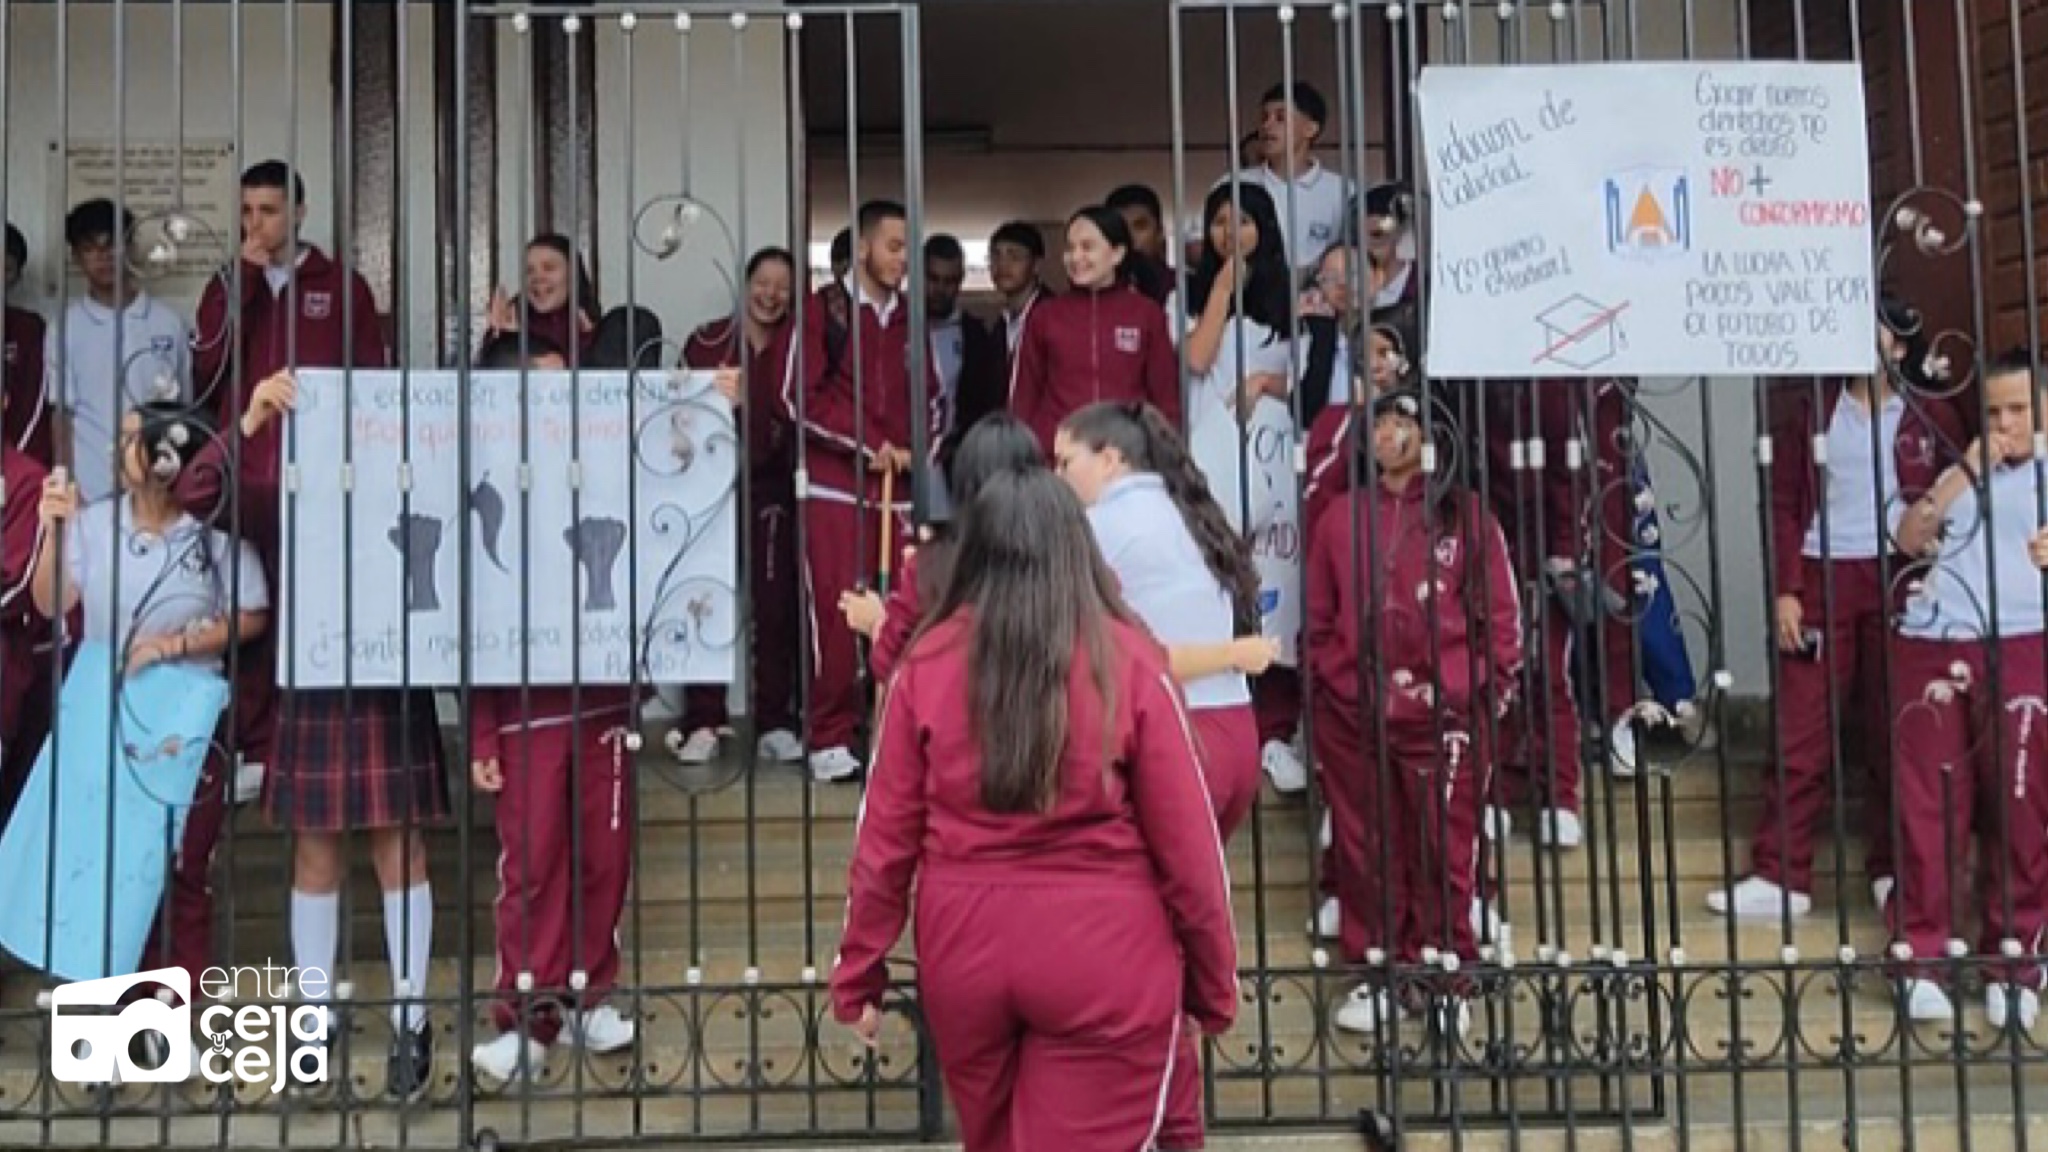 Alcalde de Abejorral se pronunció frente al paro de los estudiantes de la Normal